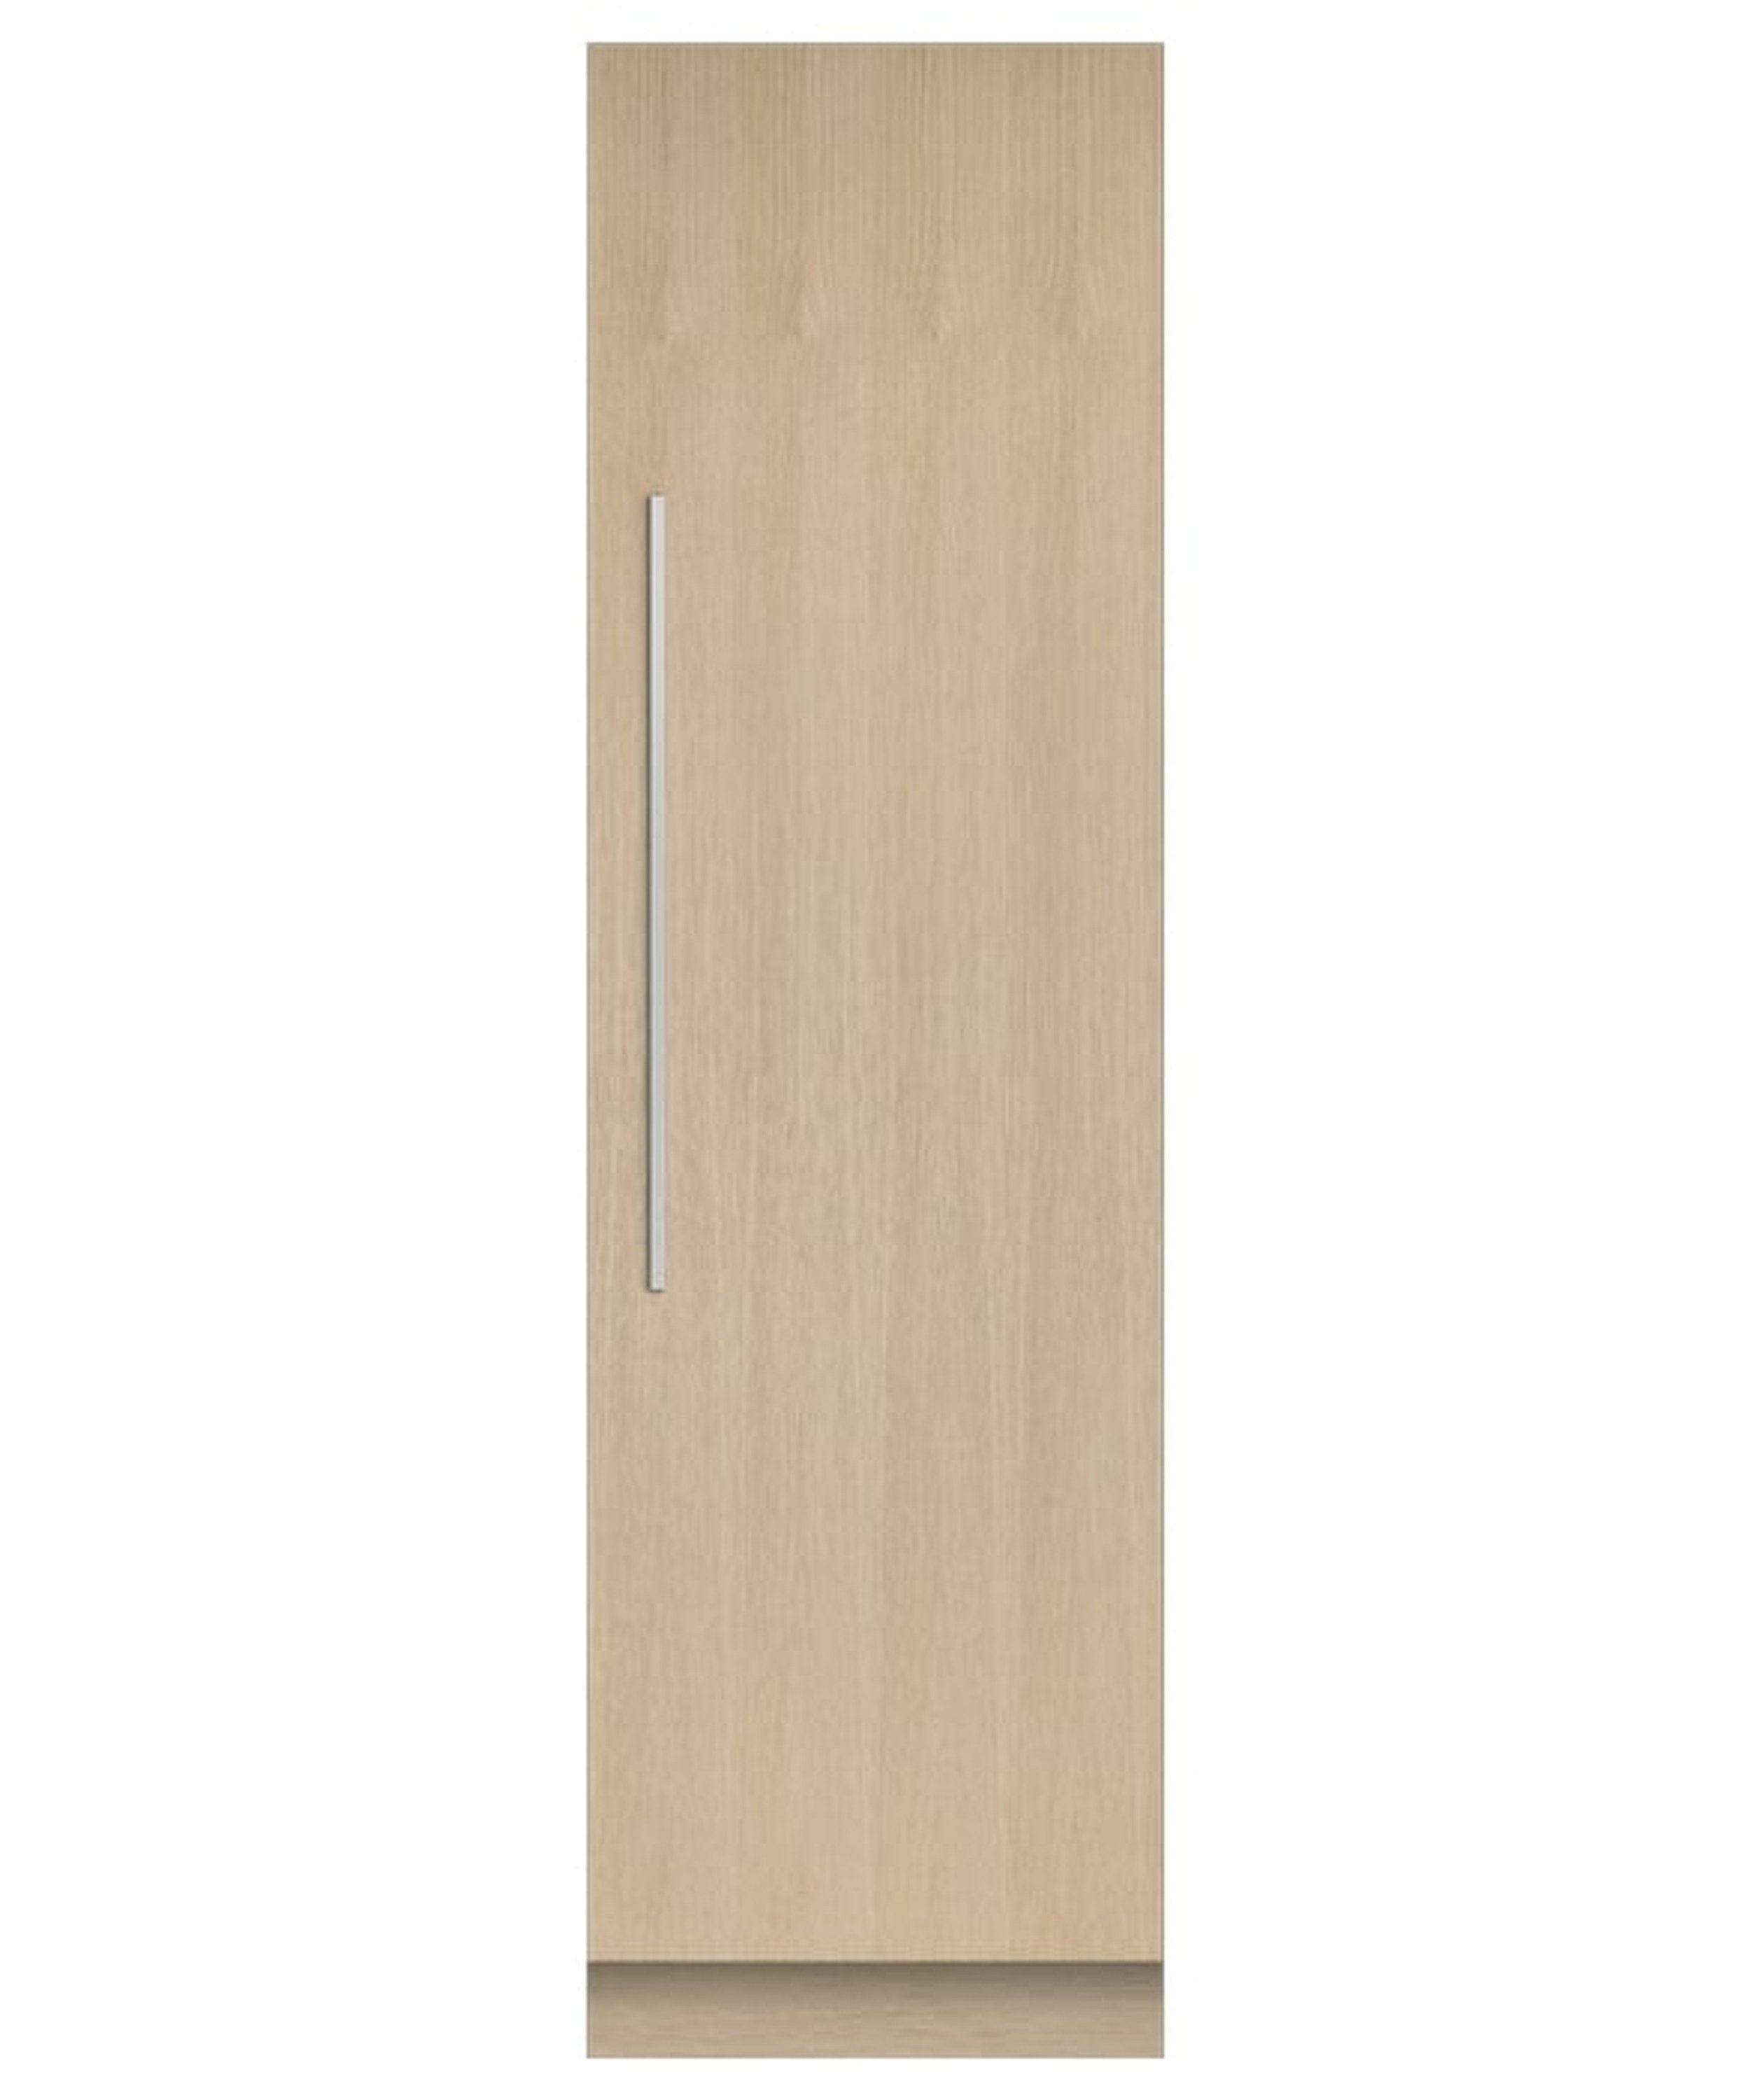 Fisher & Paykel Einbaukühlschrank RS6121SRK, 213.4 cm hoch, 60.3 cm breit